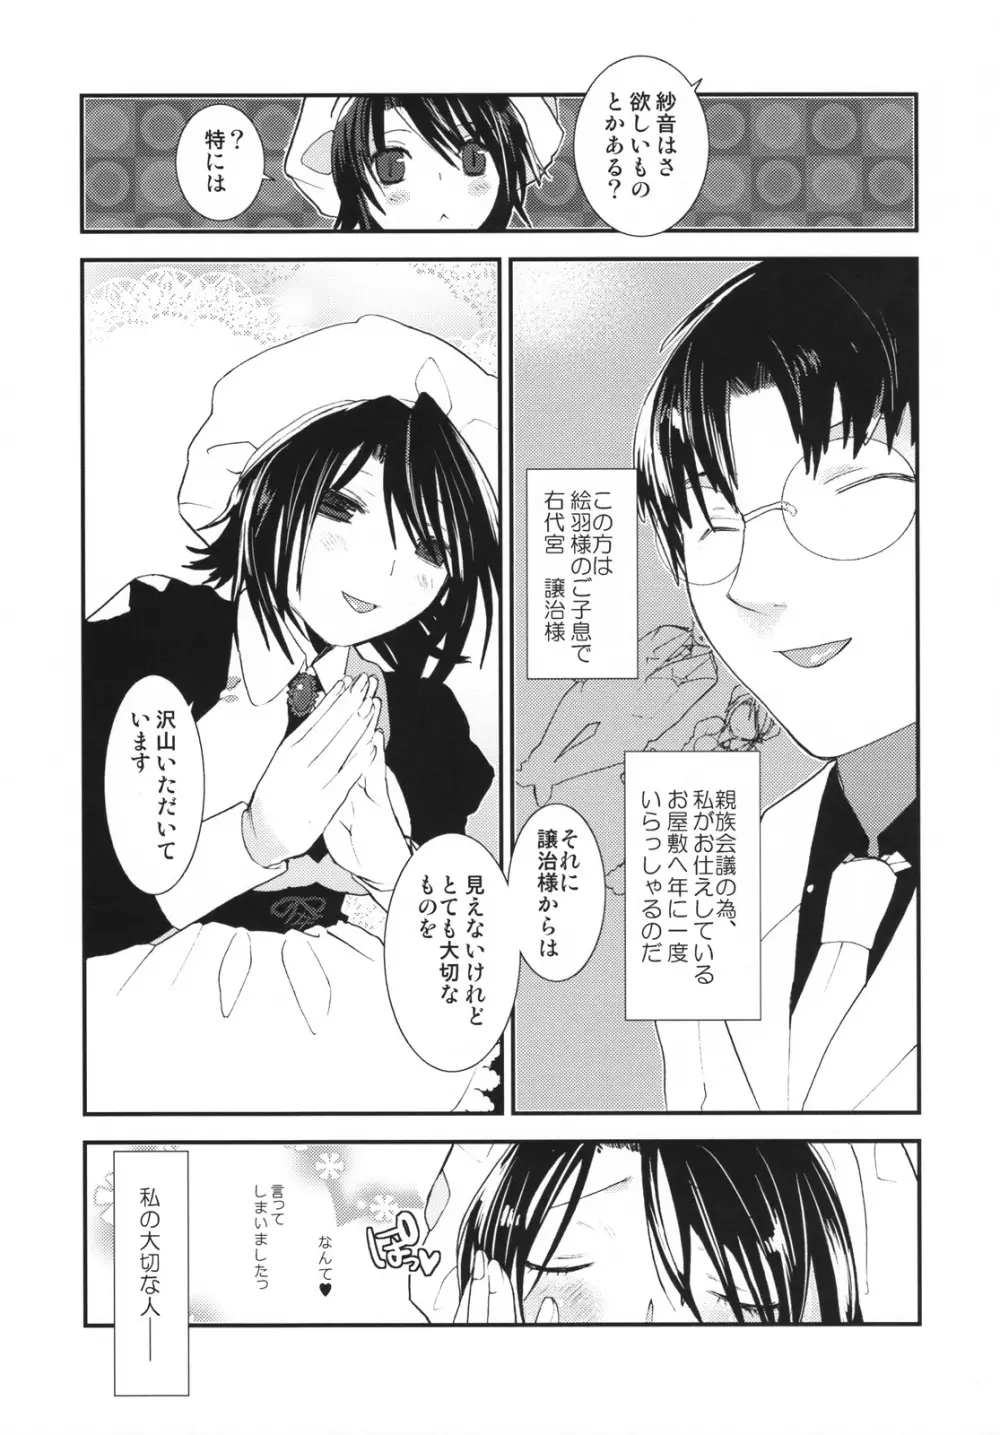 Umineko sono higurashi - page4